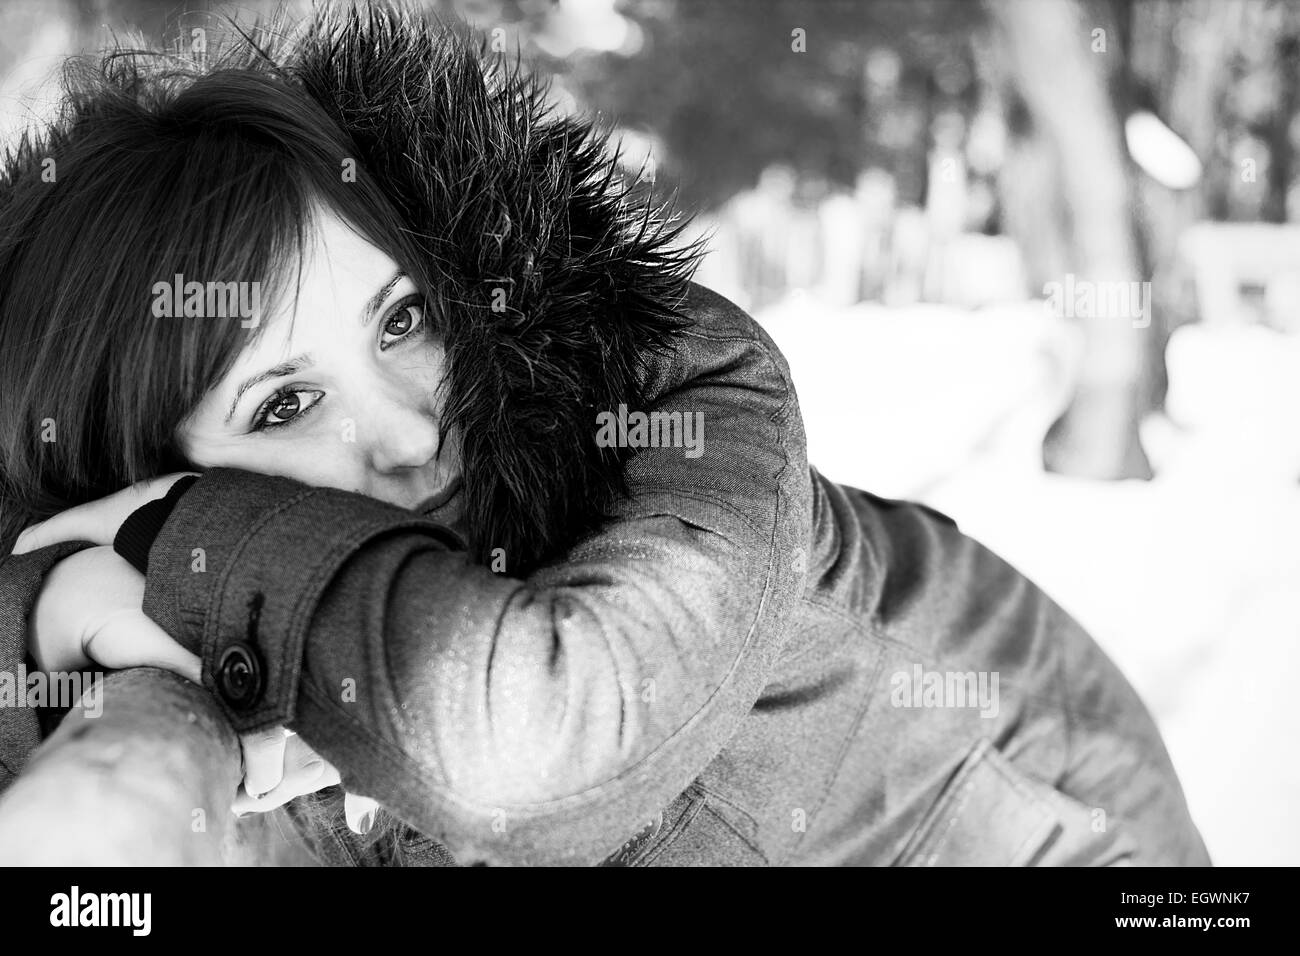 Closeup ritratto di una donna graziosa in inverno in scala di grigi Foto Stock